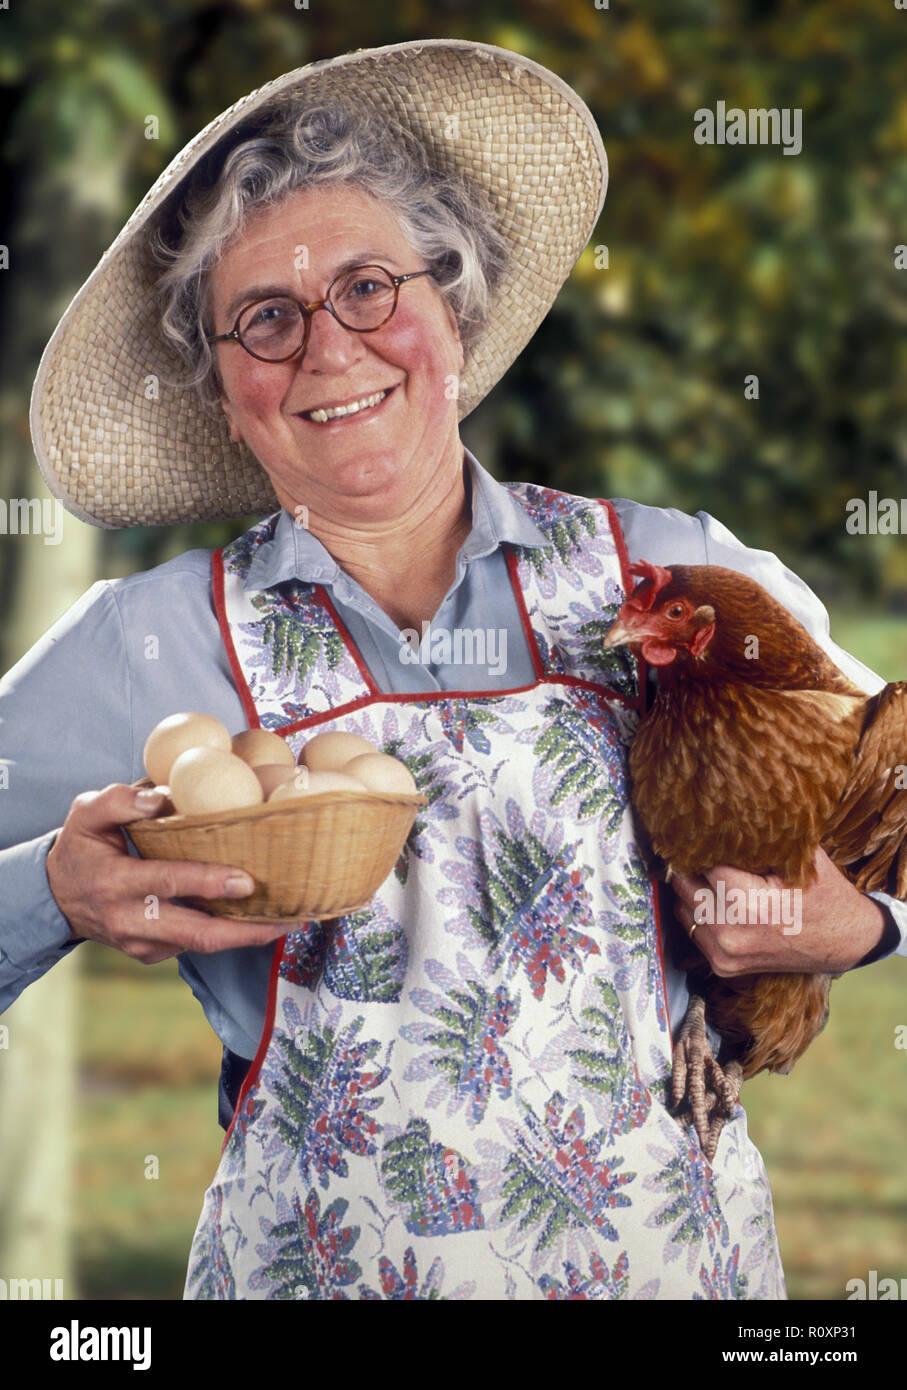 La femme d'un agriculteur portant des lunettes et un chapeau de paille  tient une poule rouge et un panier d'œufs fraîchement pondus. Elle a des  joues roses, des cheveux gris et un